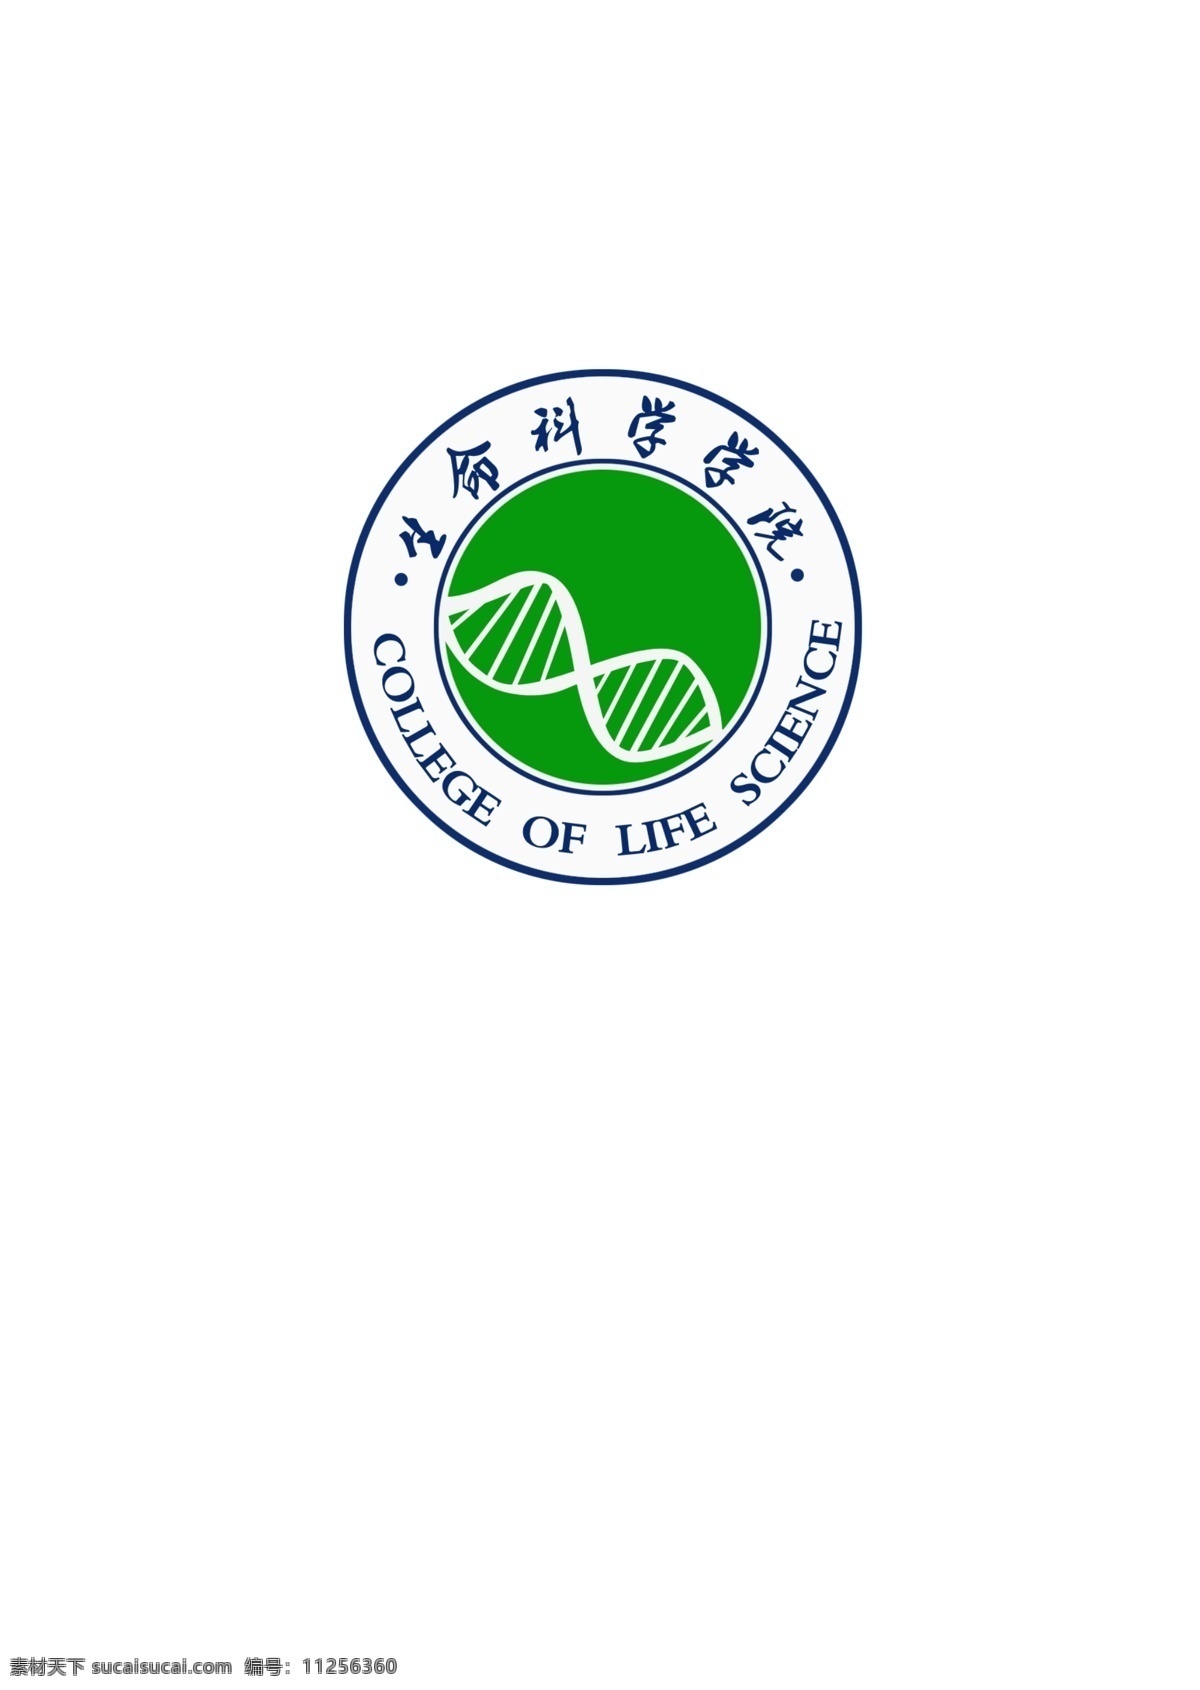 生命学院院徽 logo 生命科学 院徽 学校 大学 logo素材 logo设计 白色